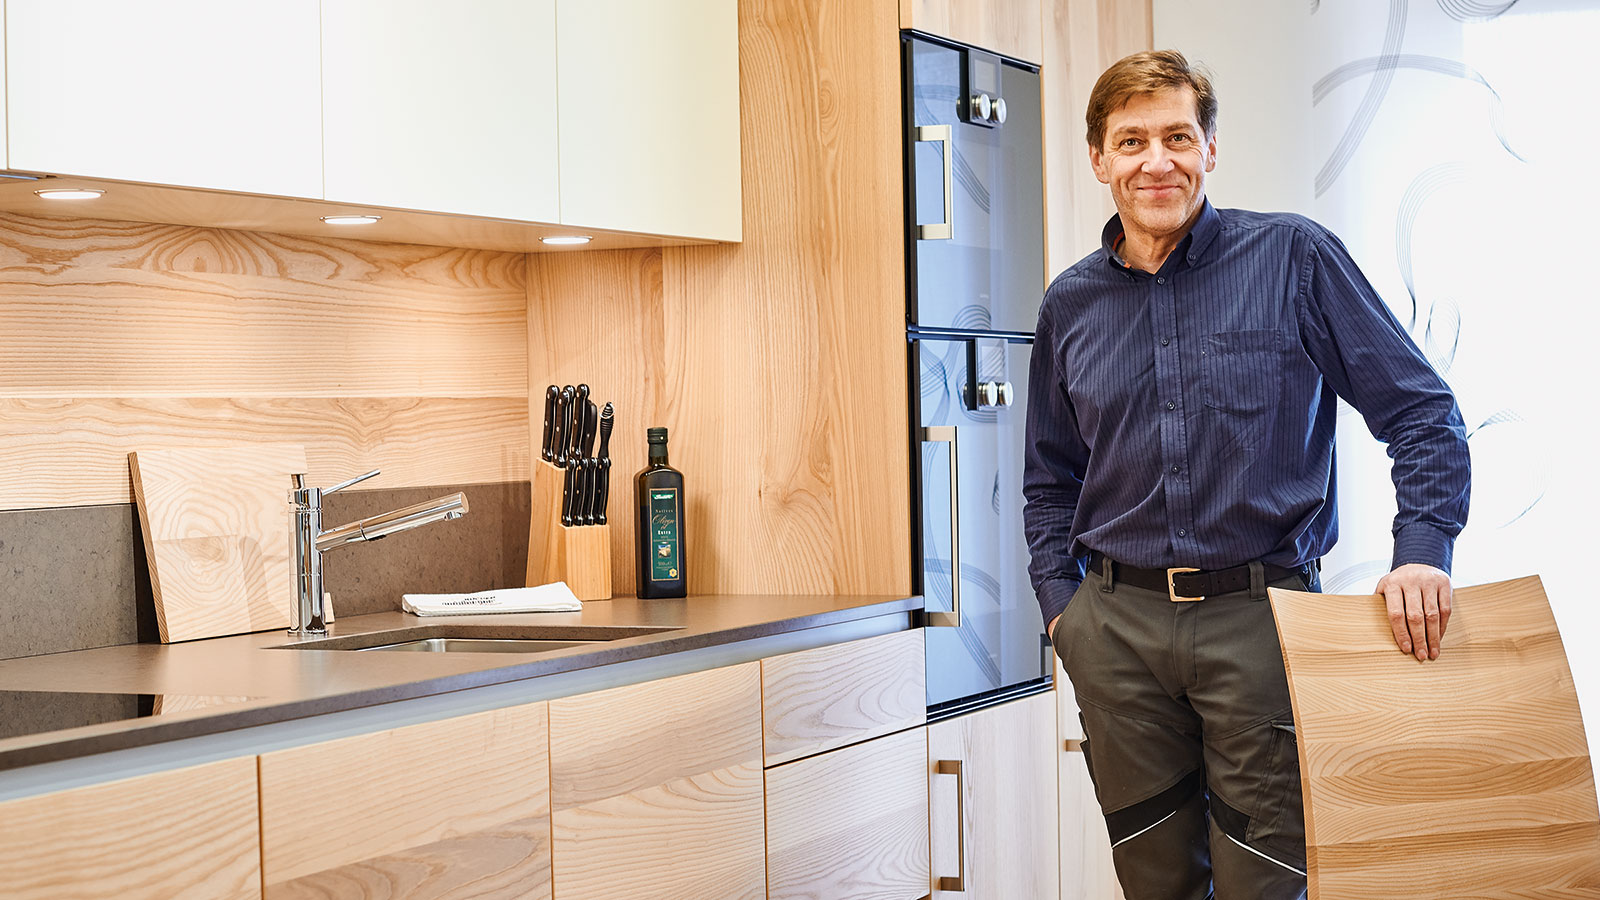 カスタムメイドのキッチン: 家具職人のマイスター Martin Geisberger は、品質を最も重視しています